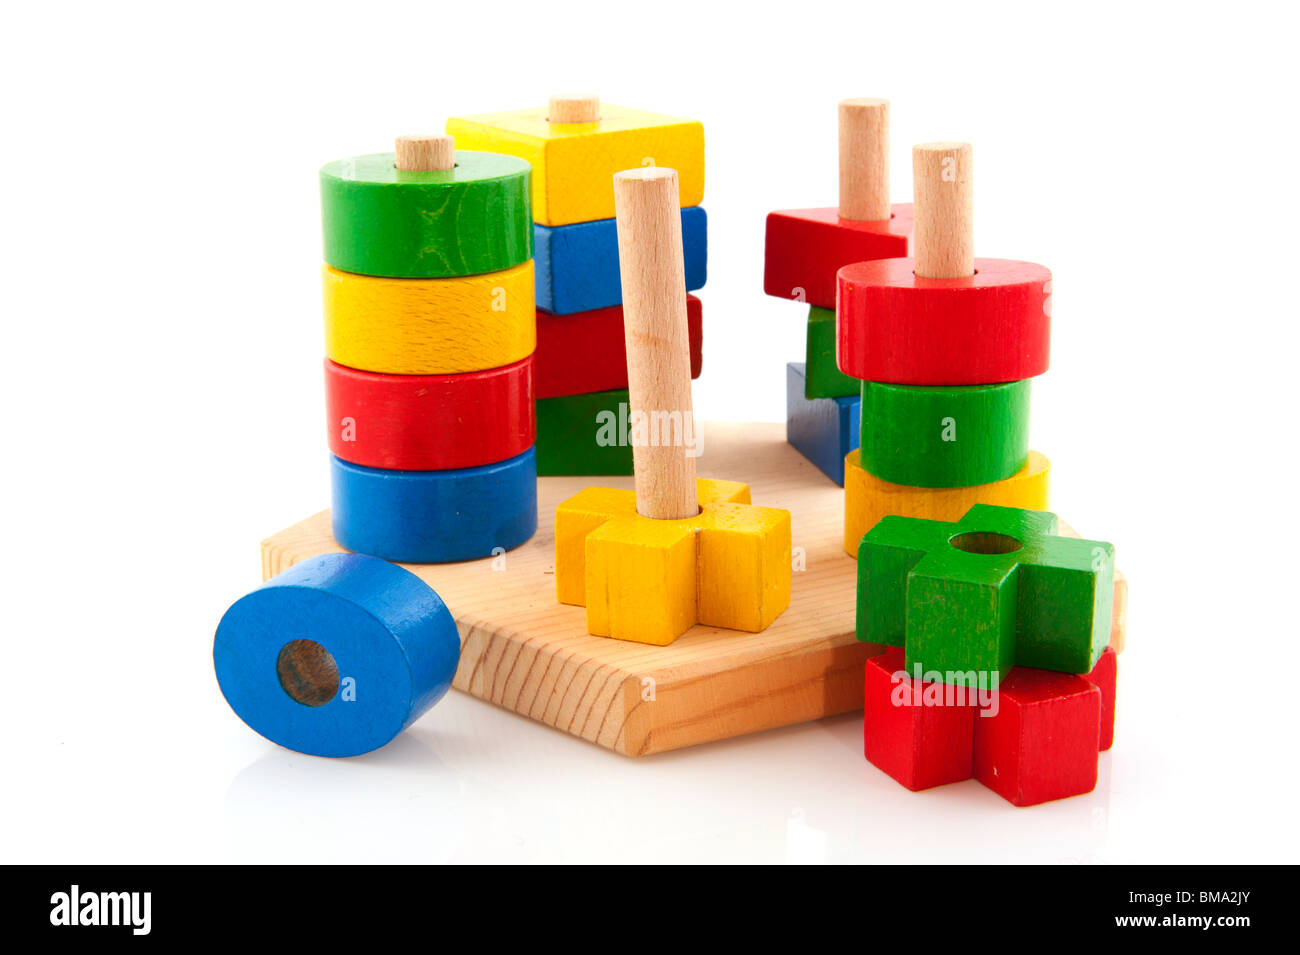 Les jouets en bois comme un puzzle avec des formes différentes Banque D'Images